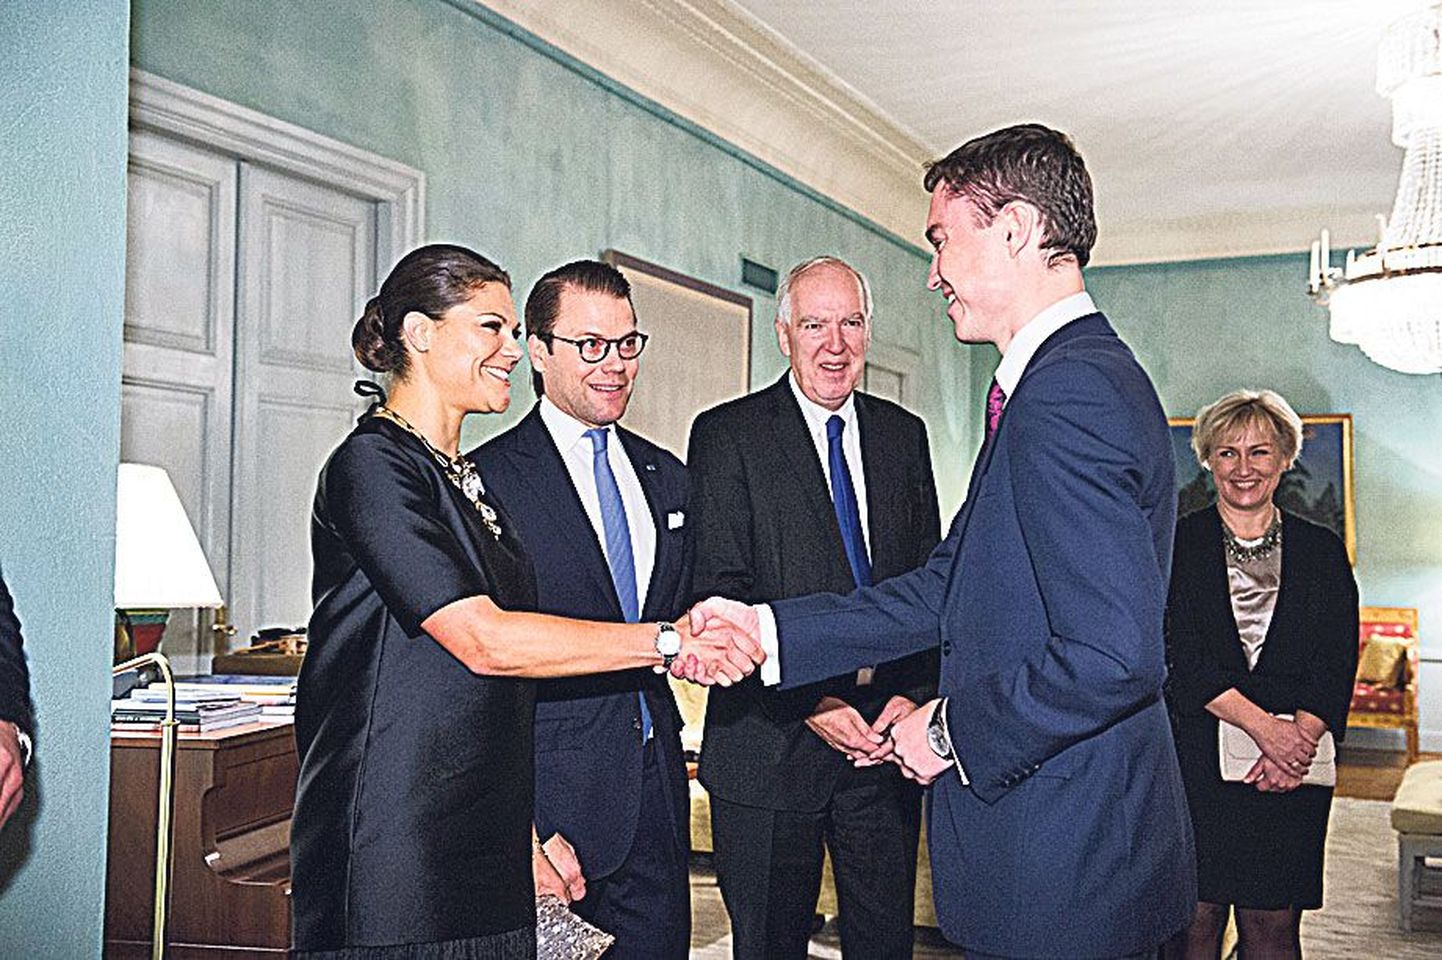 Salongis: Rootsi kroonprintsess Victoria ja prints Daniel tervitavad peaminister Taavi Rõivast. Kõrval Rootsi suursaadik Anders Ljunggren.